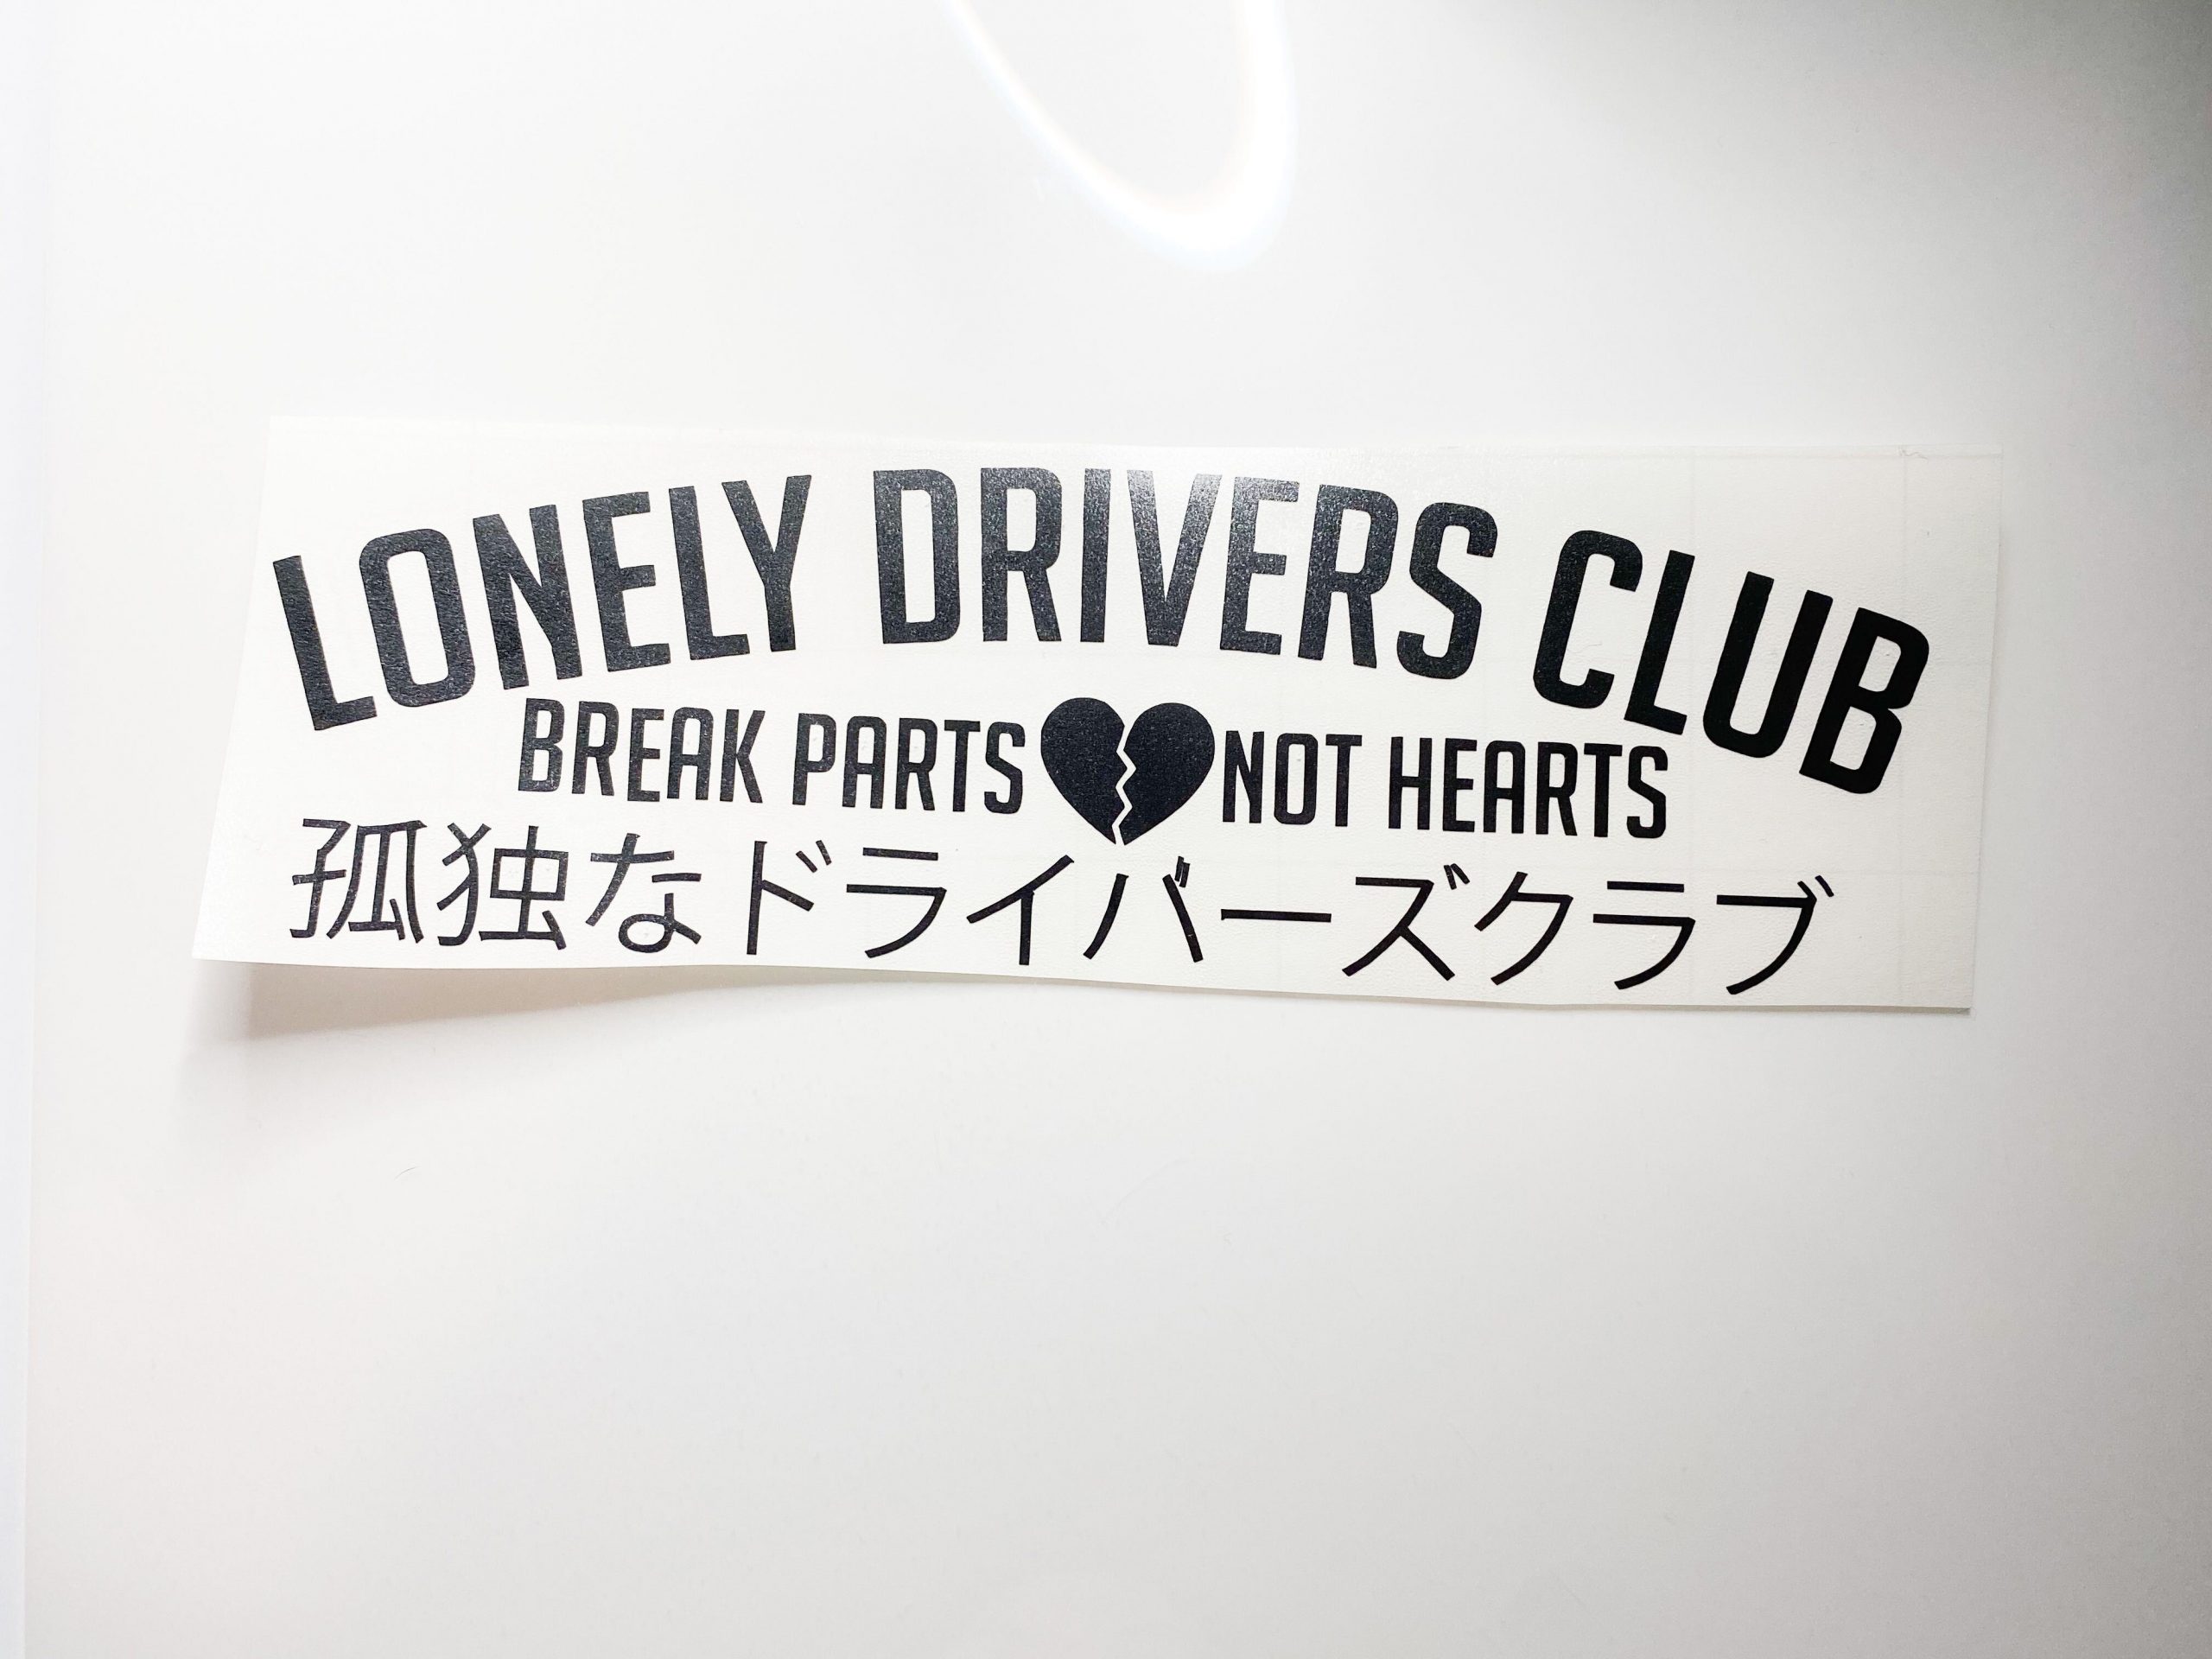 Dejected Heart - Slap – Dejected Drive Club